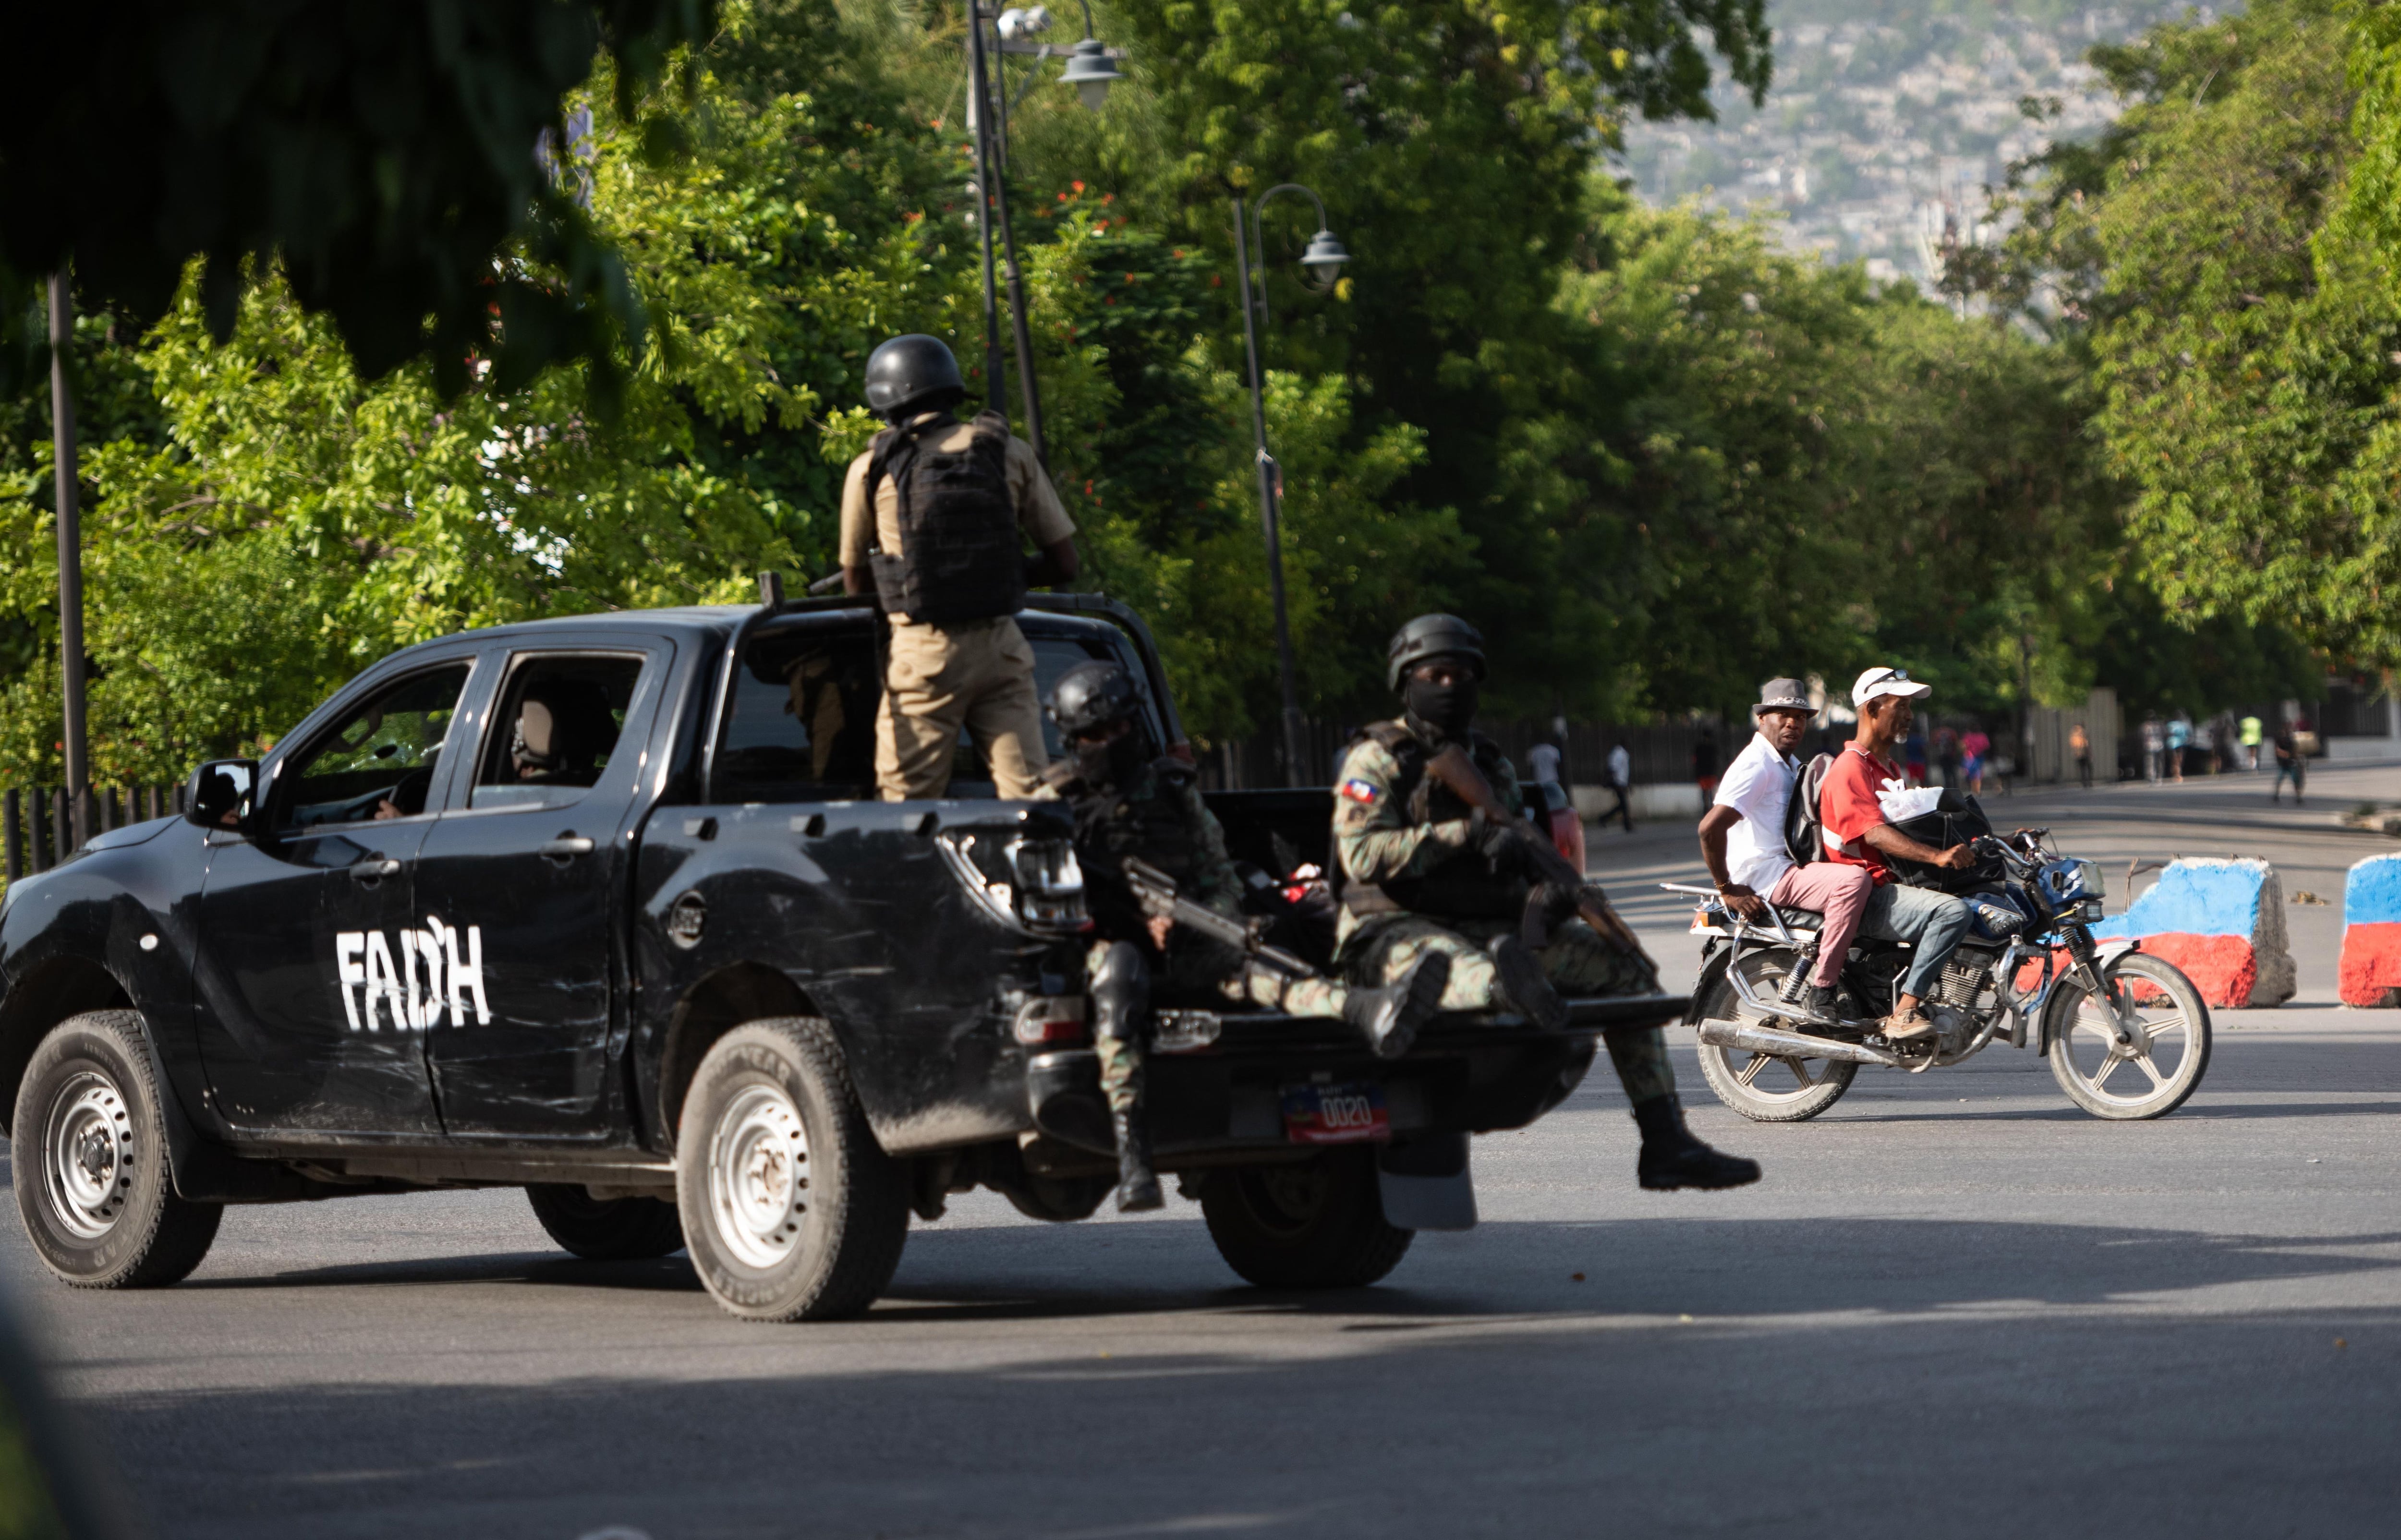 Haití vive una ola de inseguridad desde hace meses, con bandas armadas que operan impunemente en varias regiones del país, especialmente en Artibonite y Puerto Príncipe. (EFE)